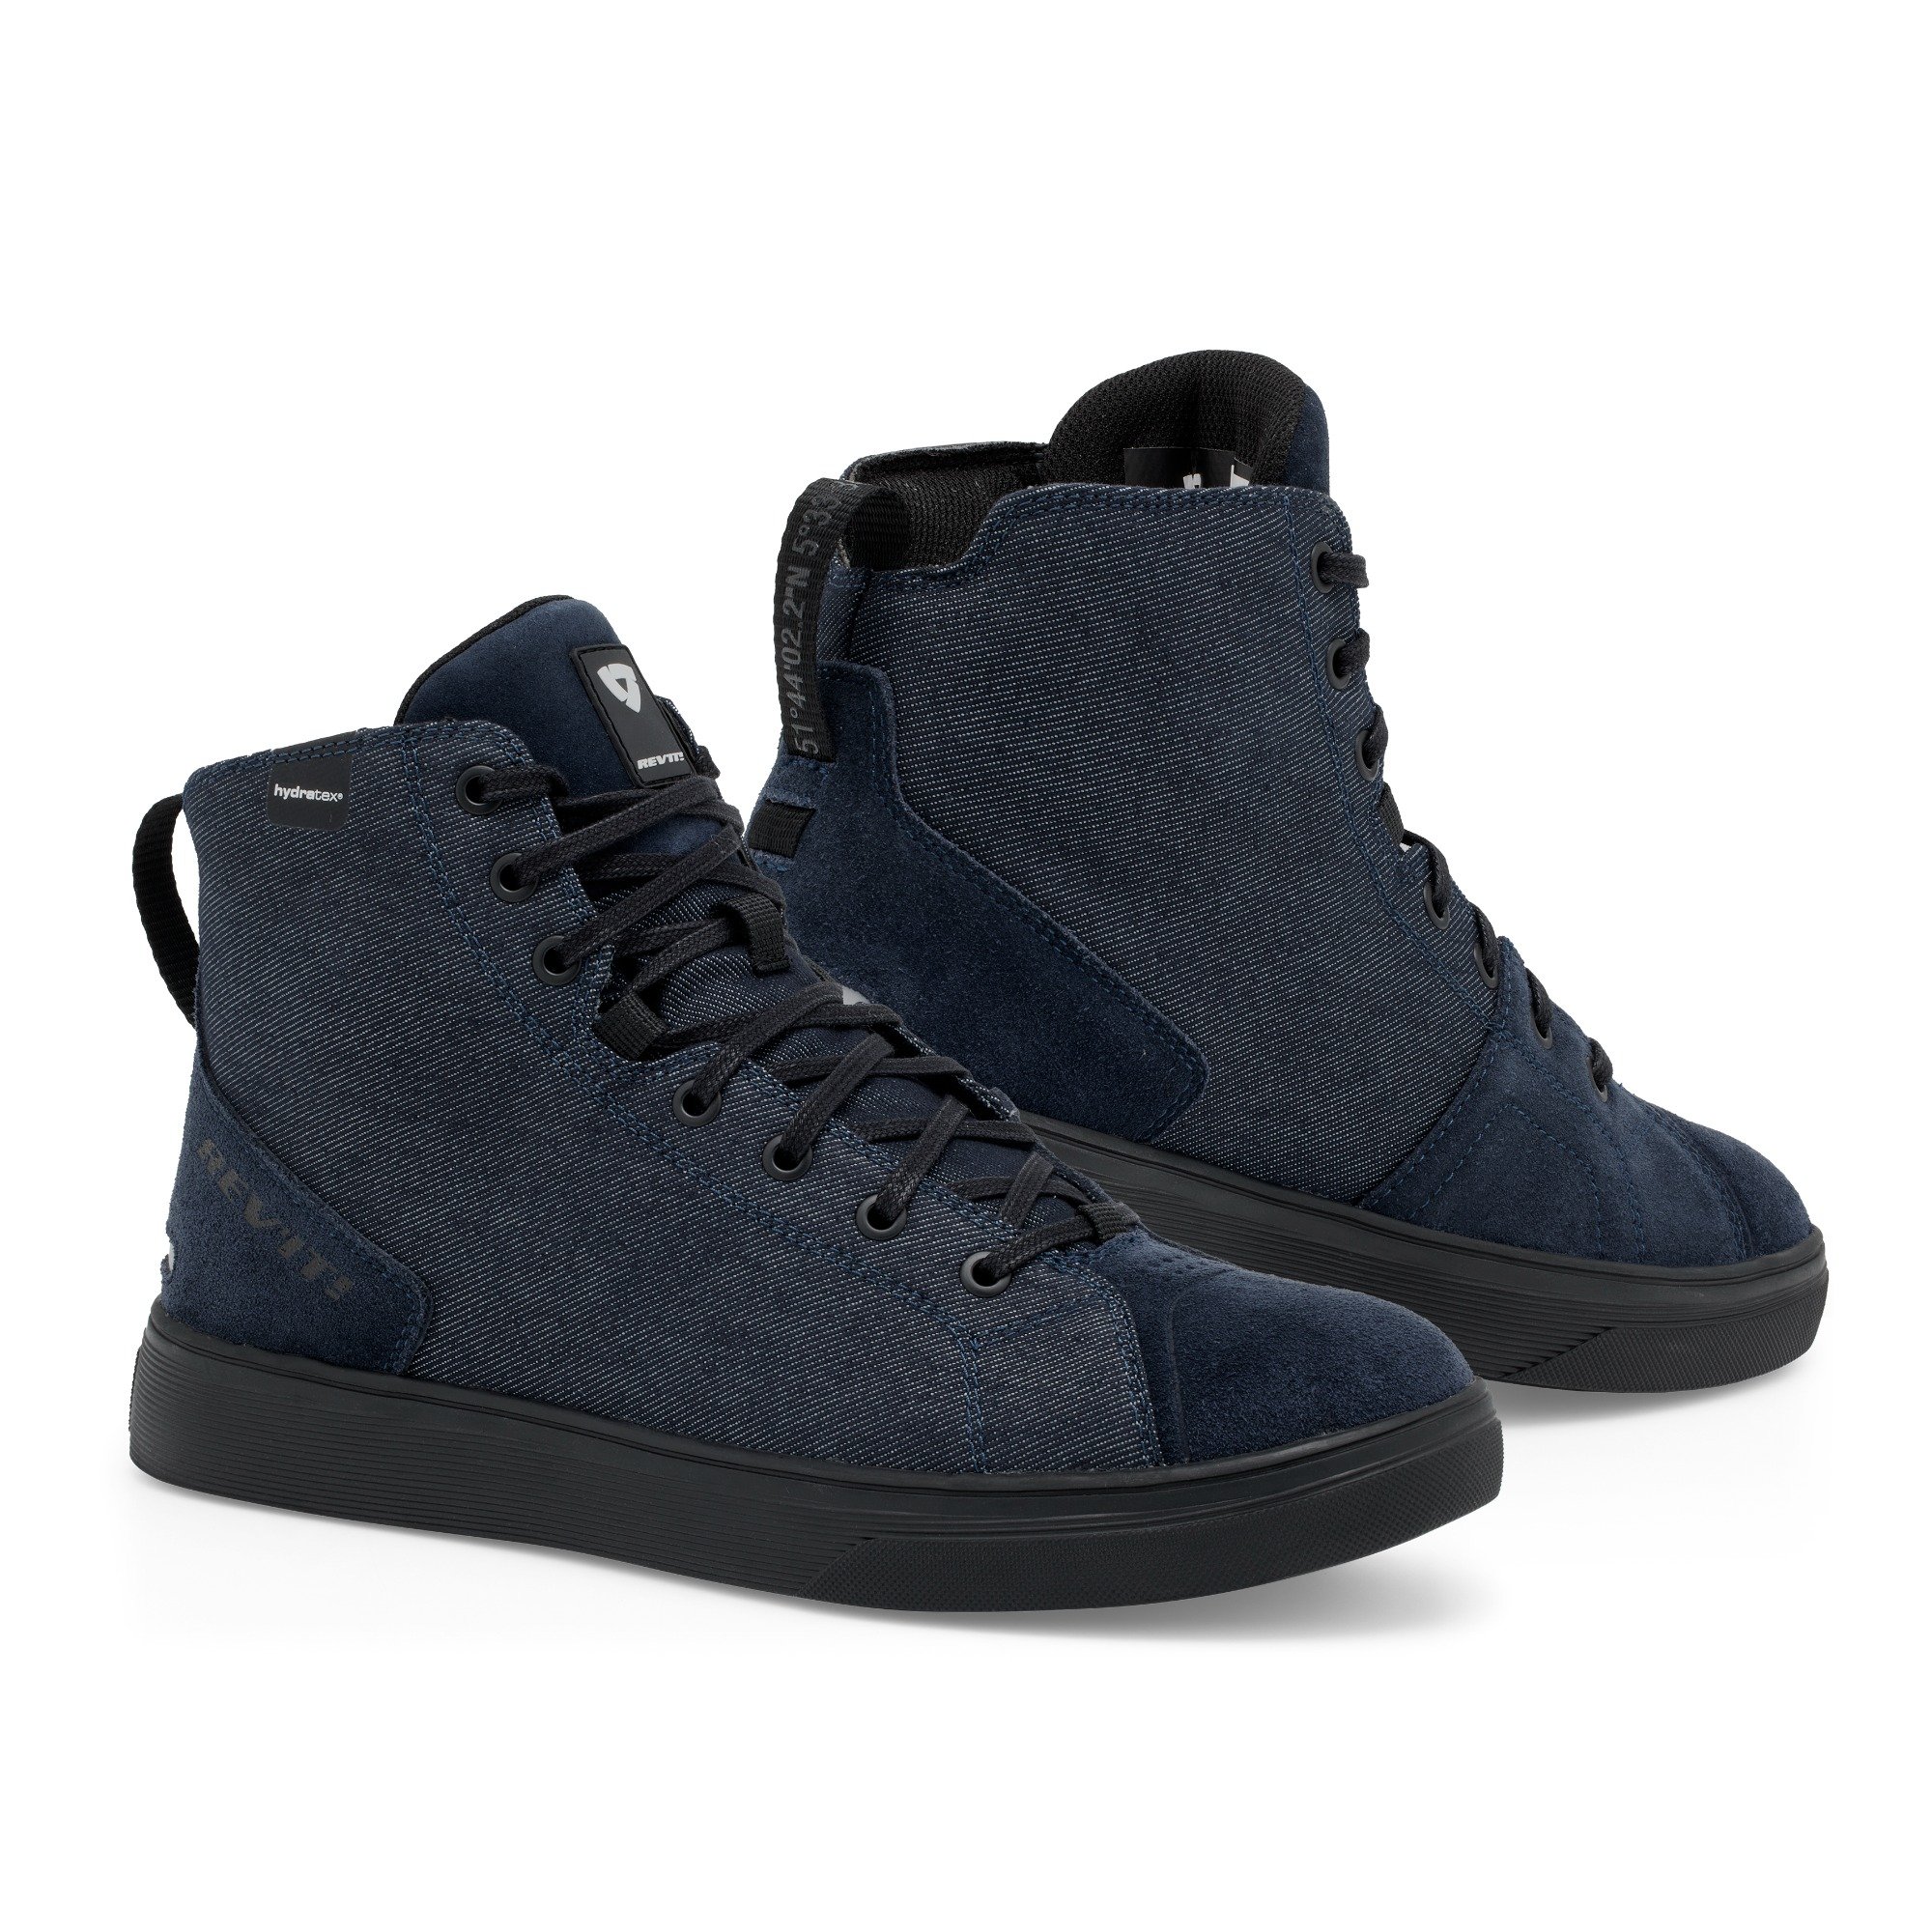 Image of REV'IT! Delta H2O Shoes Dark Blue Black Size 45 EN